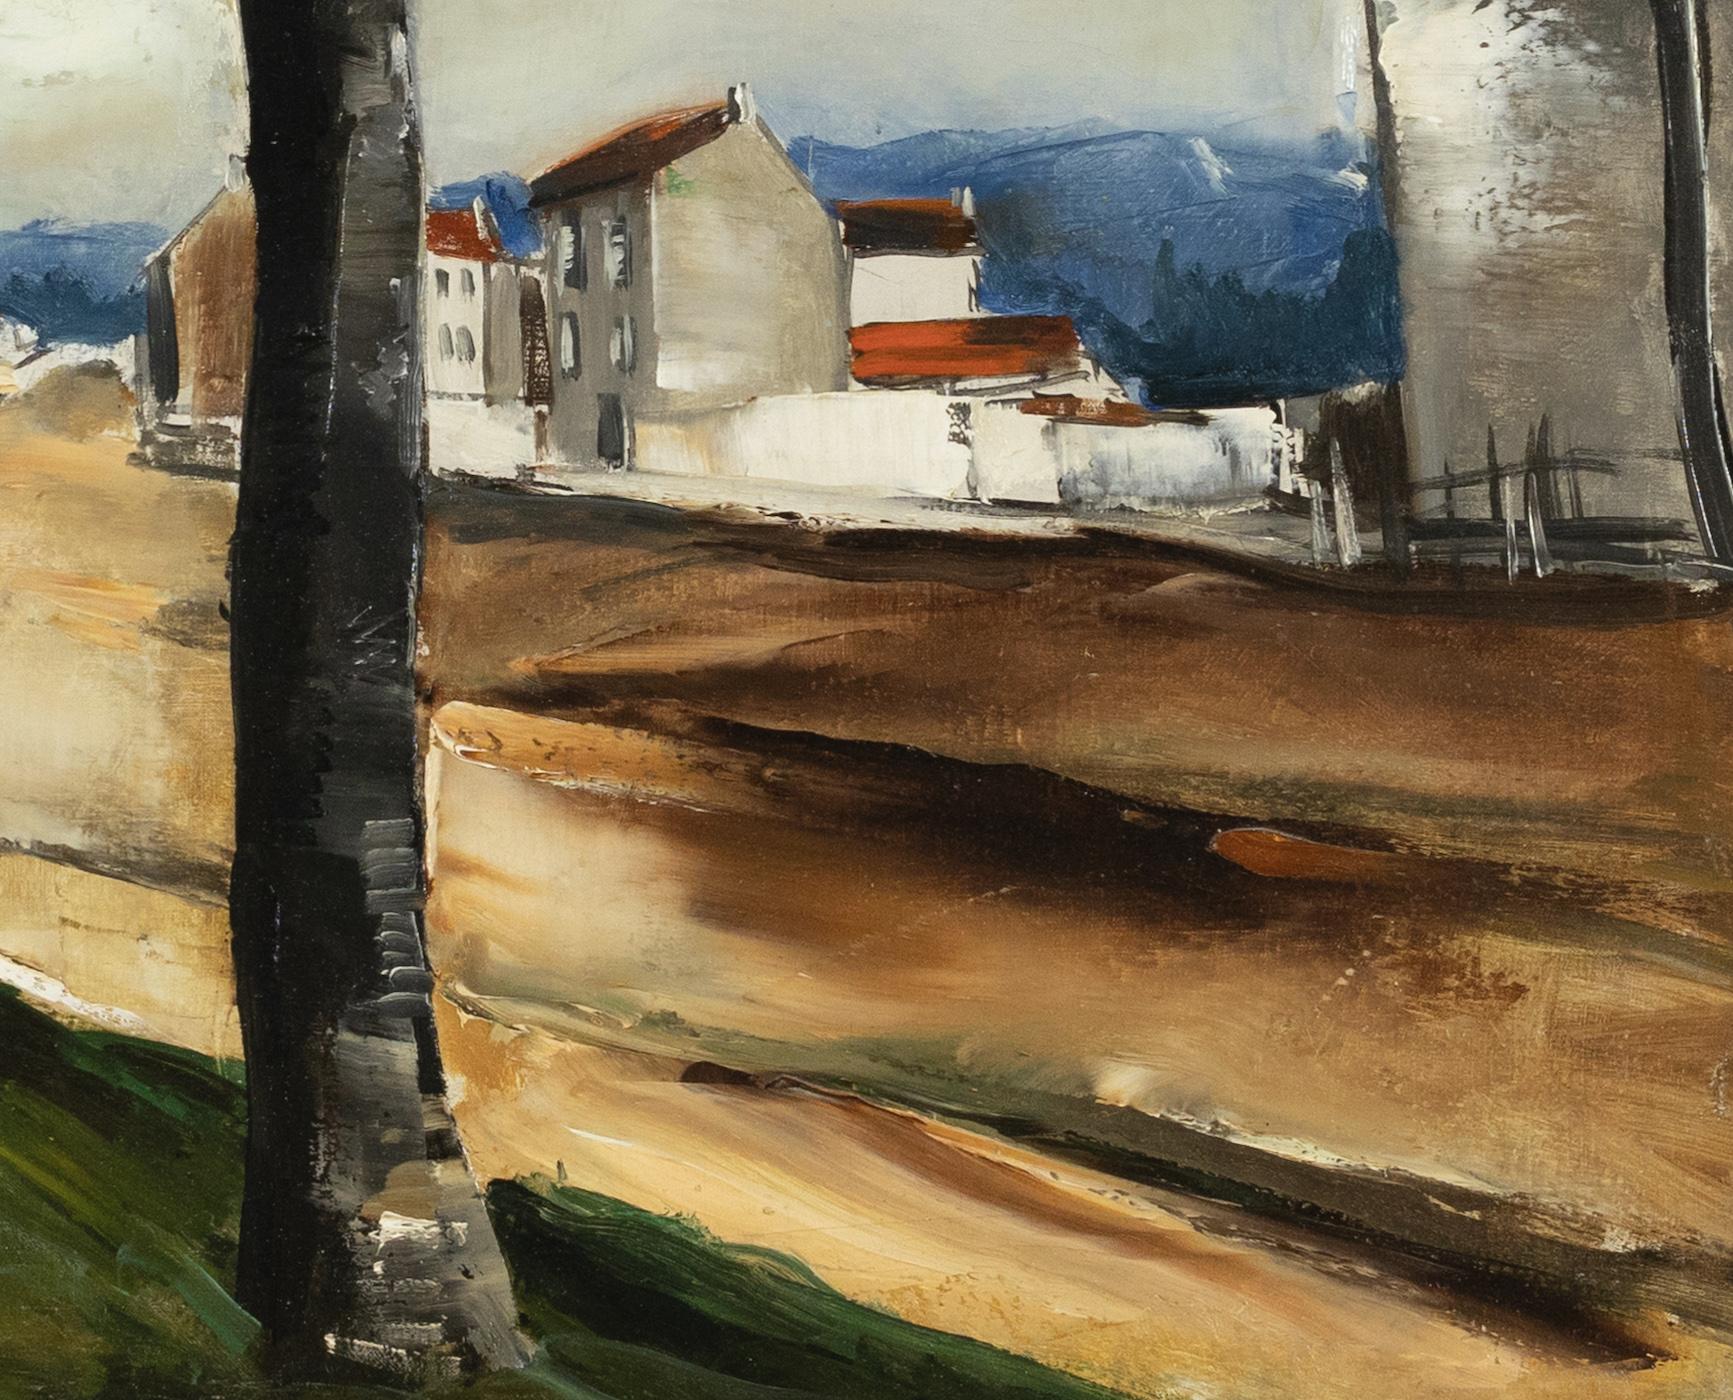 La Route by Maurice de Vlaminck - Landscape painting For Sale 3